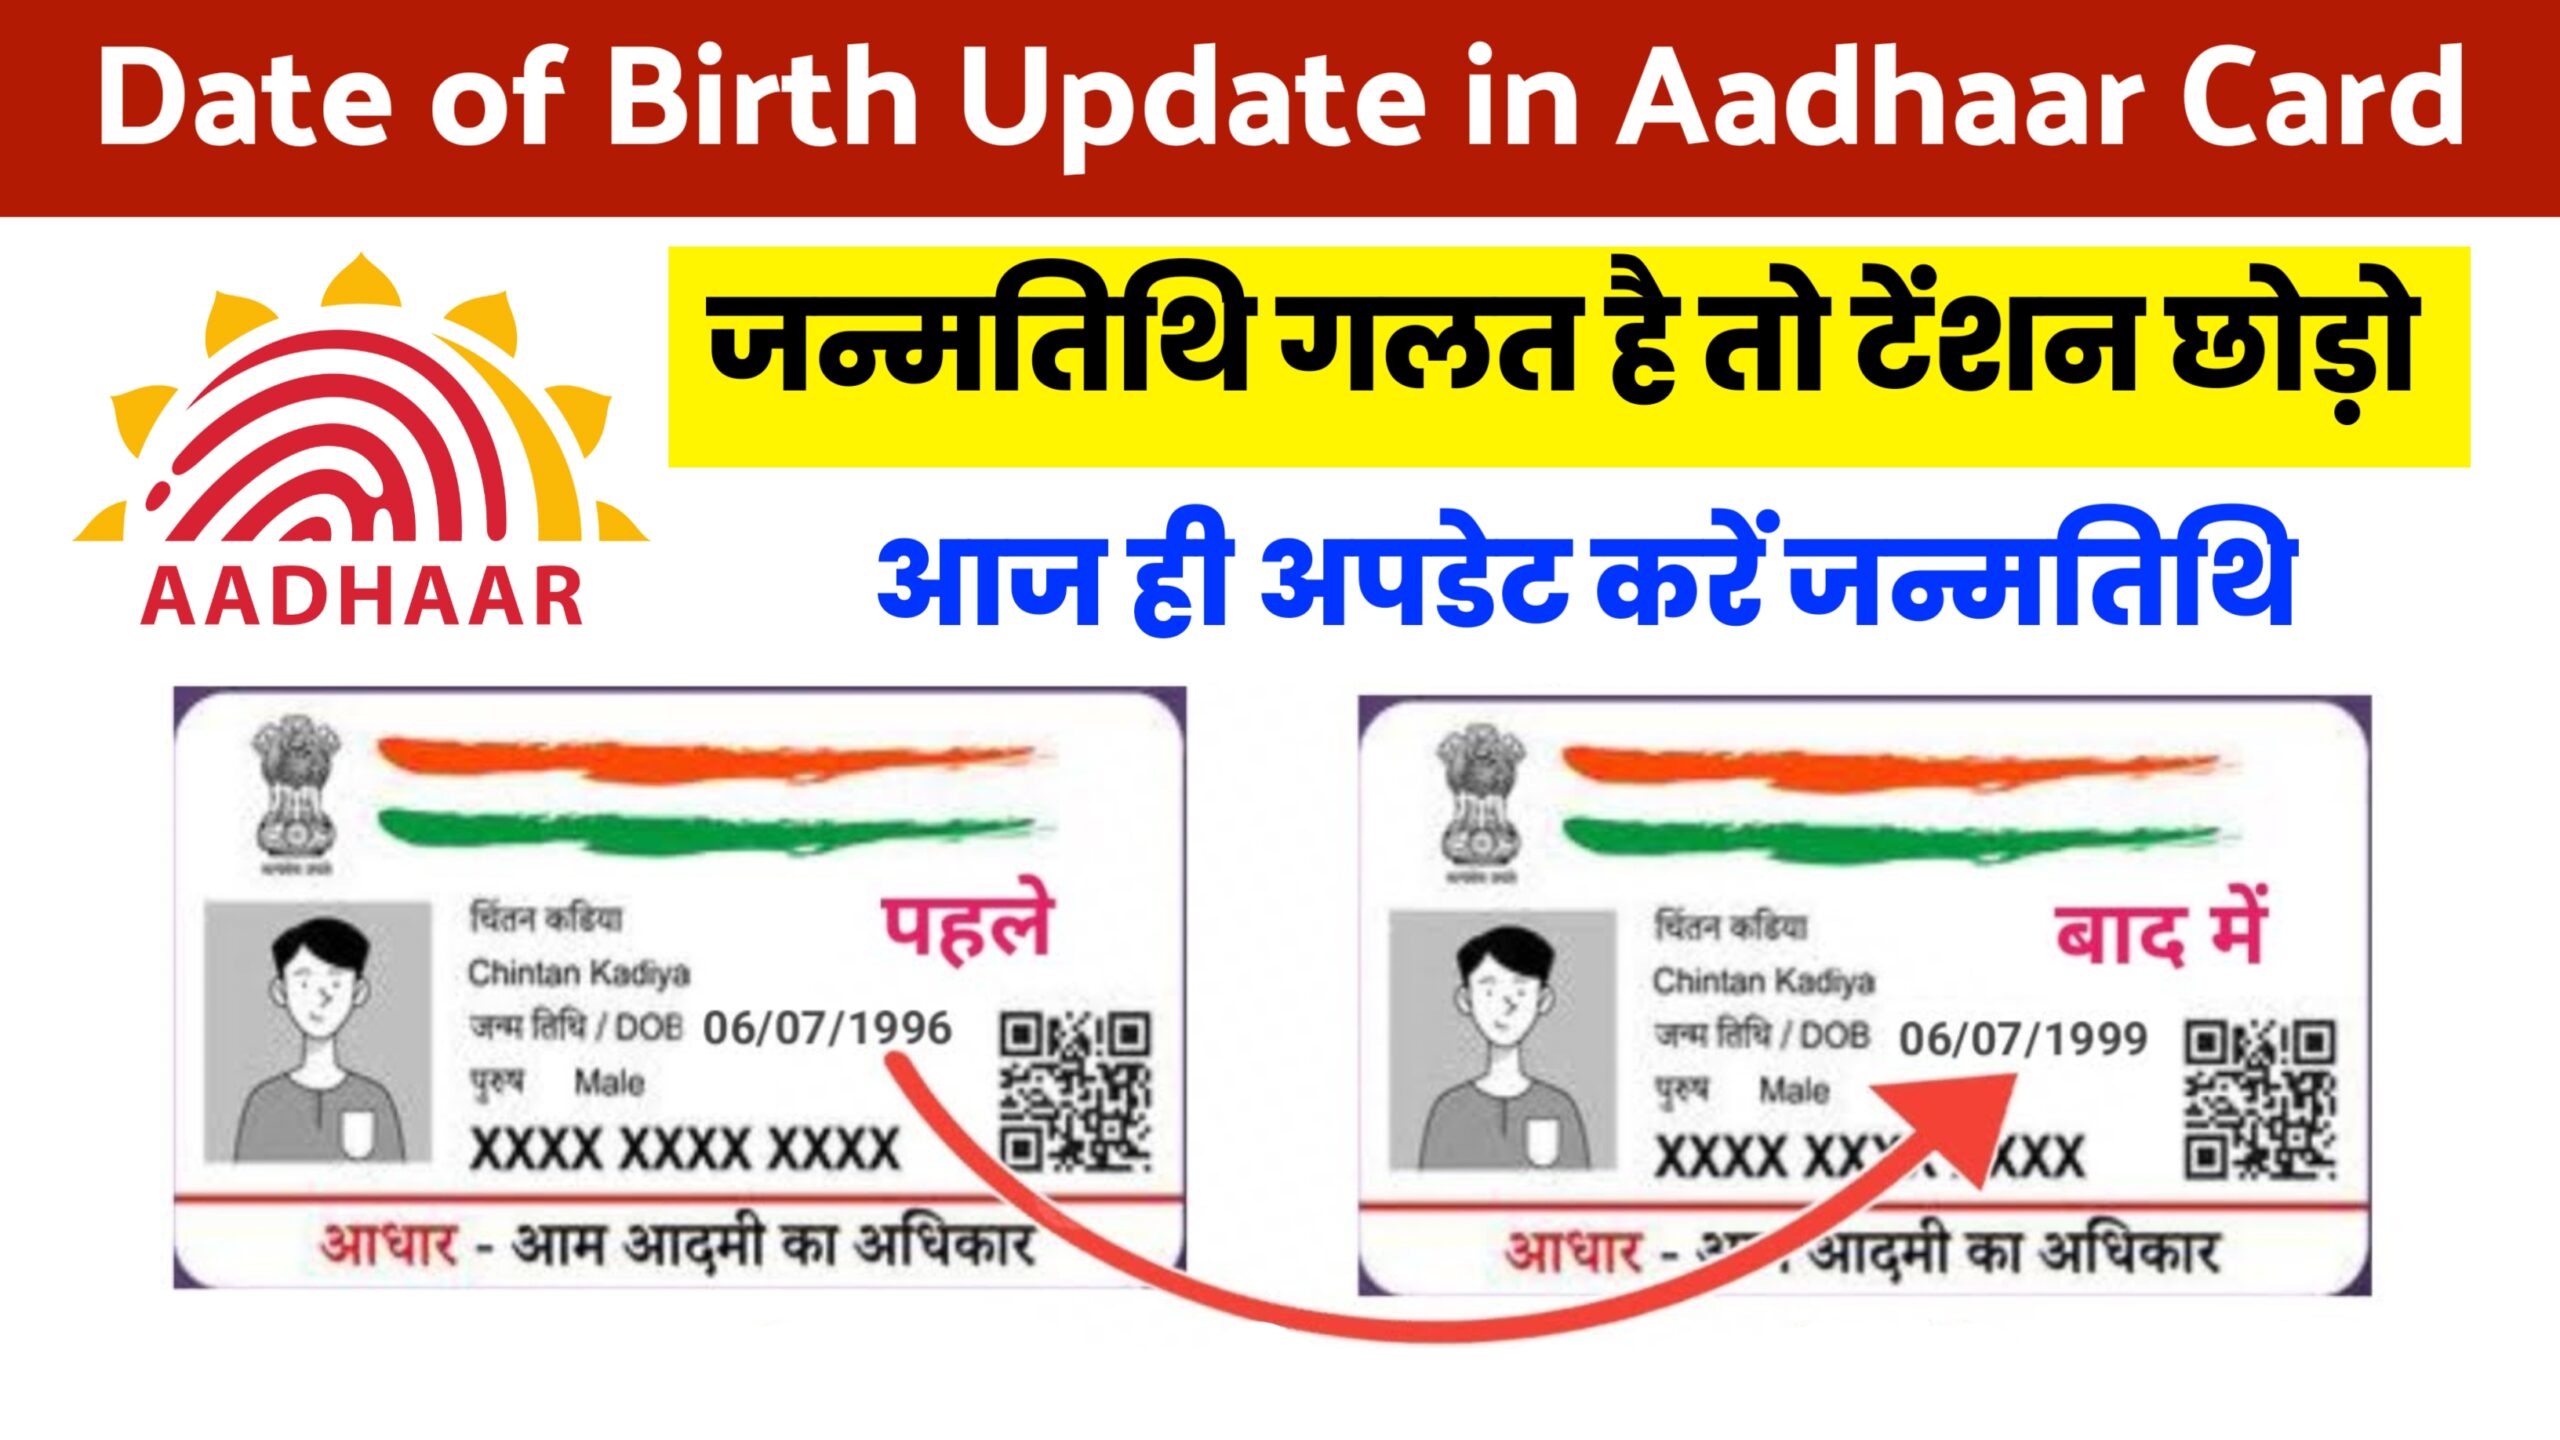 Date of Birth Update in Aadhaar Card